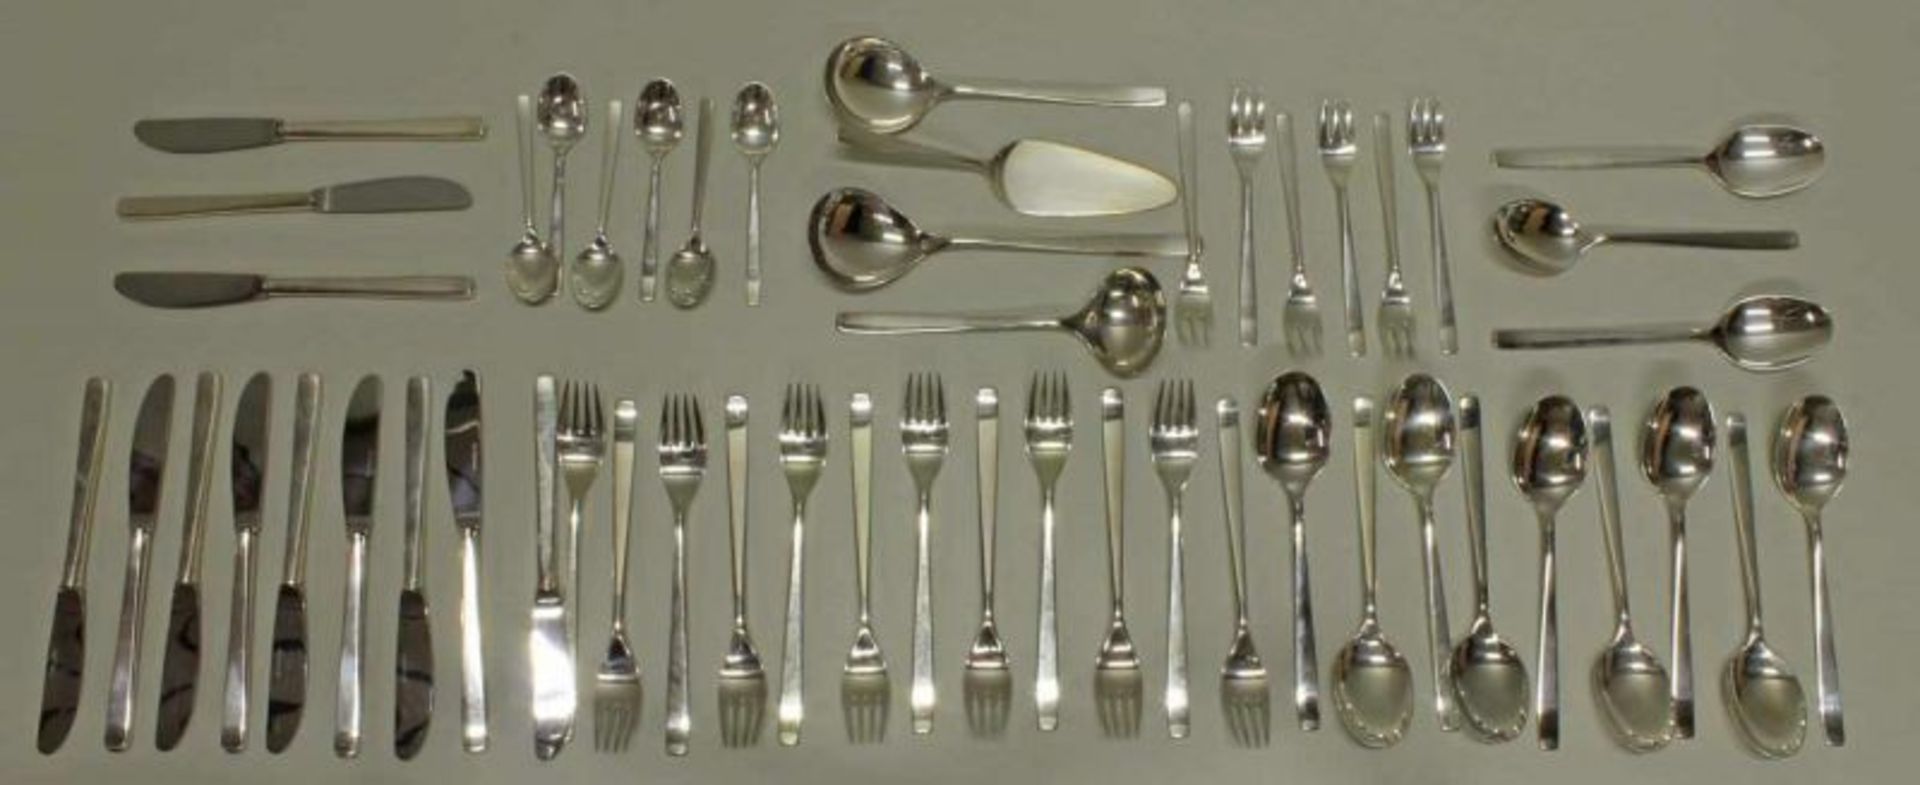 Besteck, Silber 800, Wilkens, Dekor Classic: 12 Gabeln, 12 Messer, 12 Esslöffel, 6 Kuchengabeln, 6